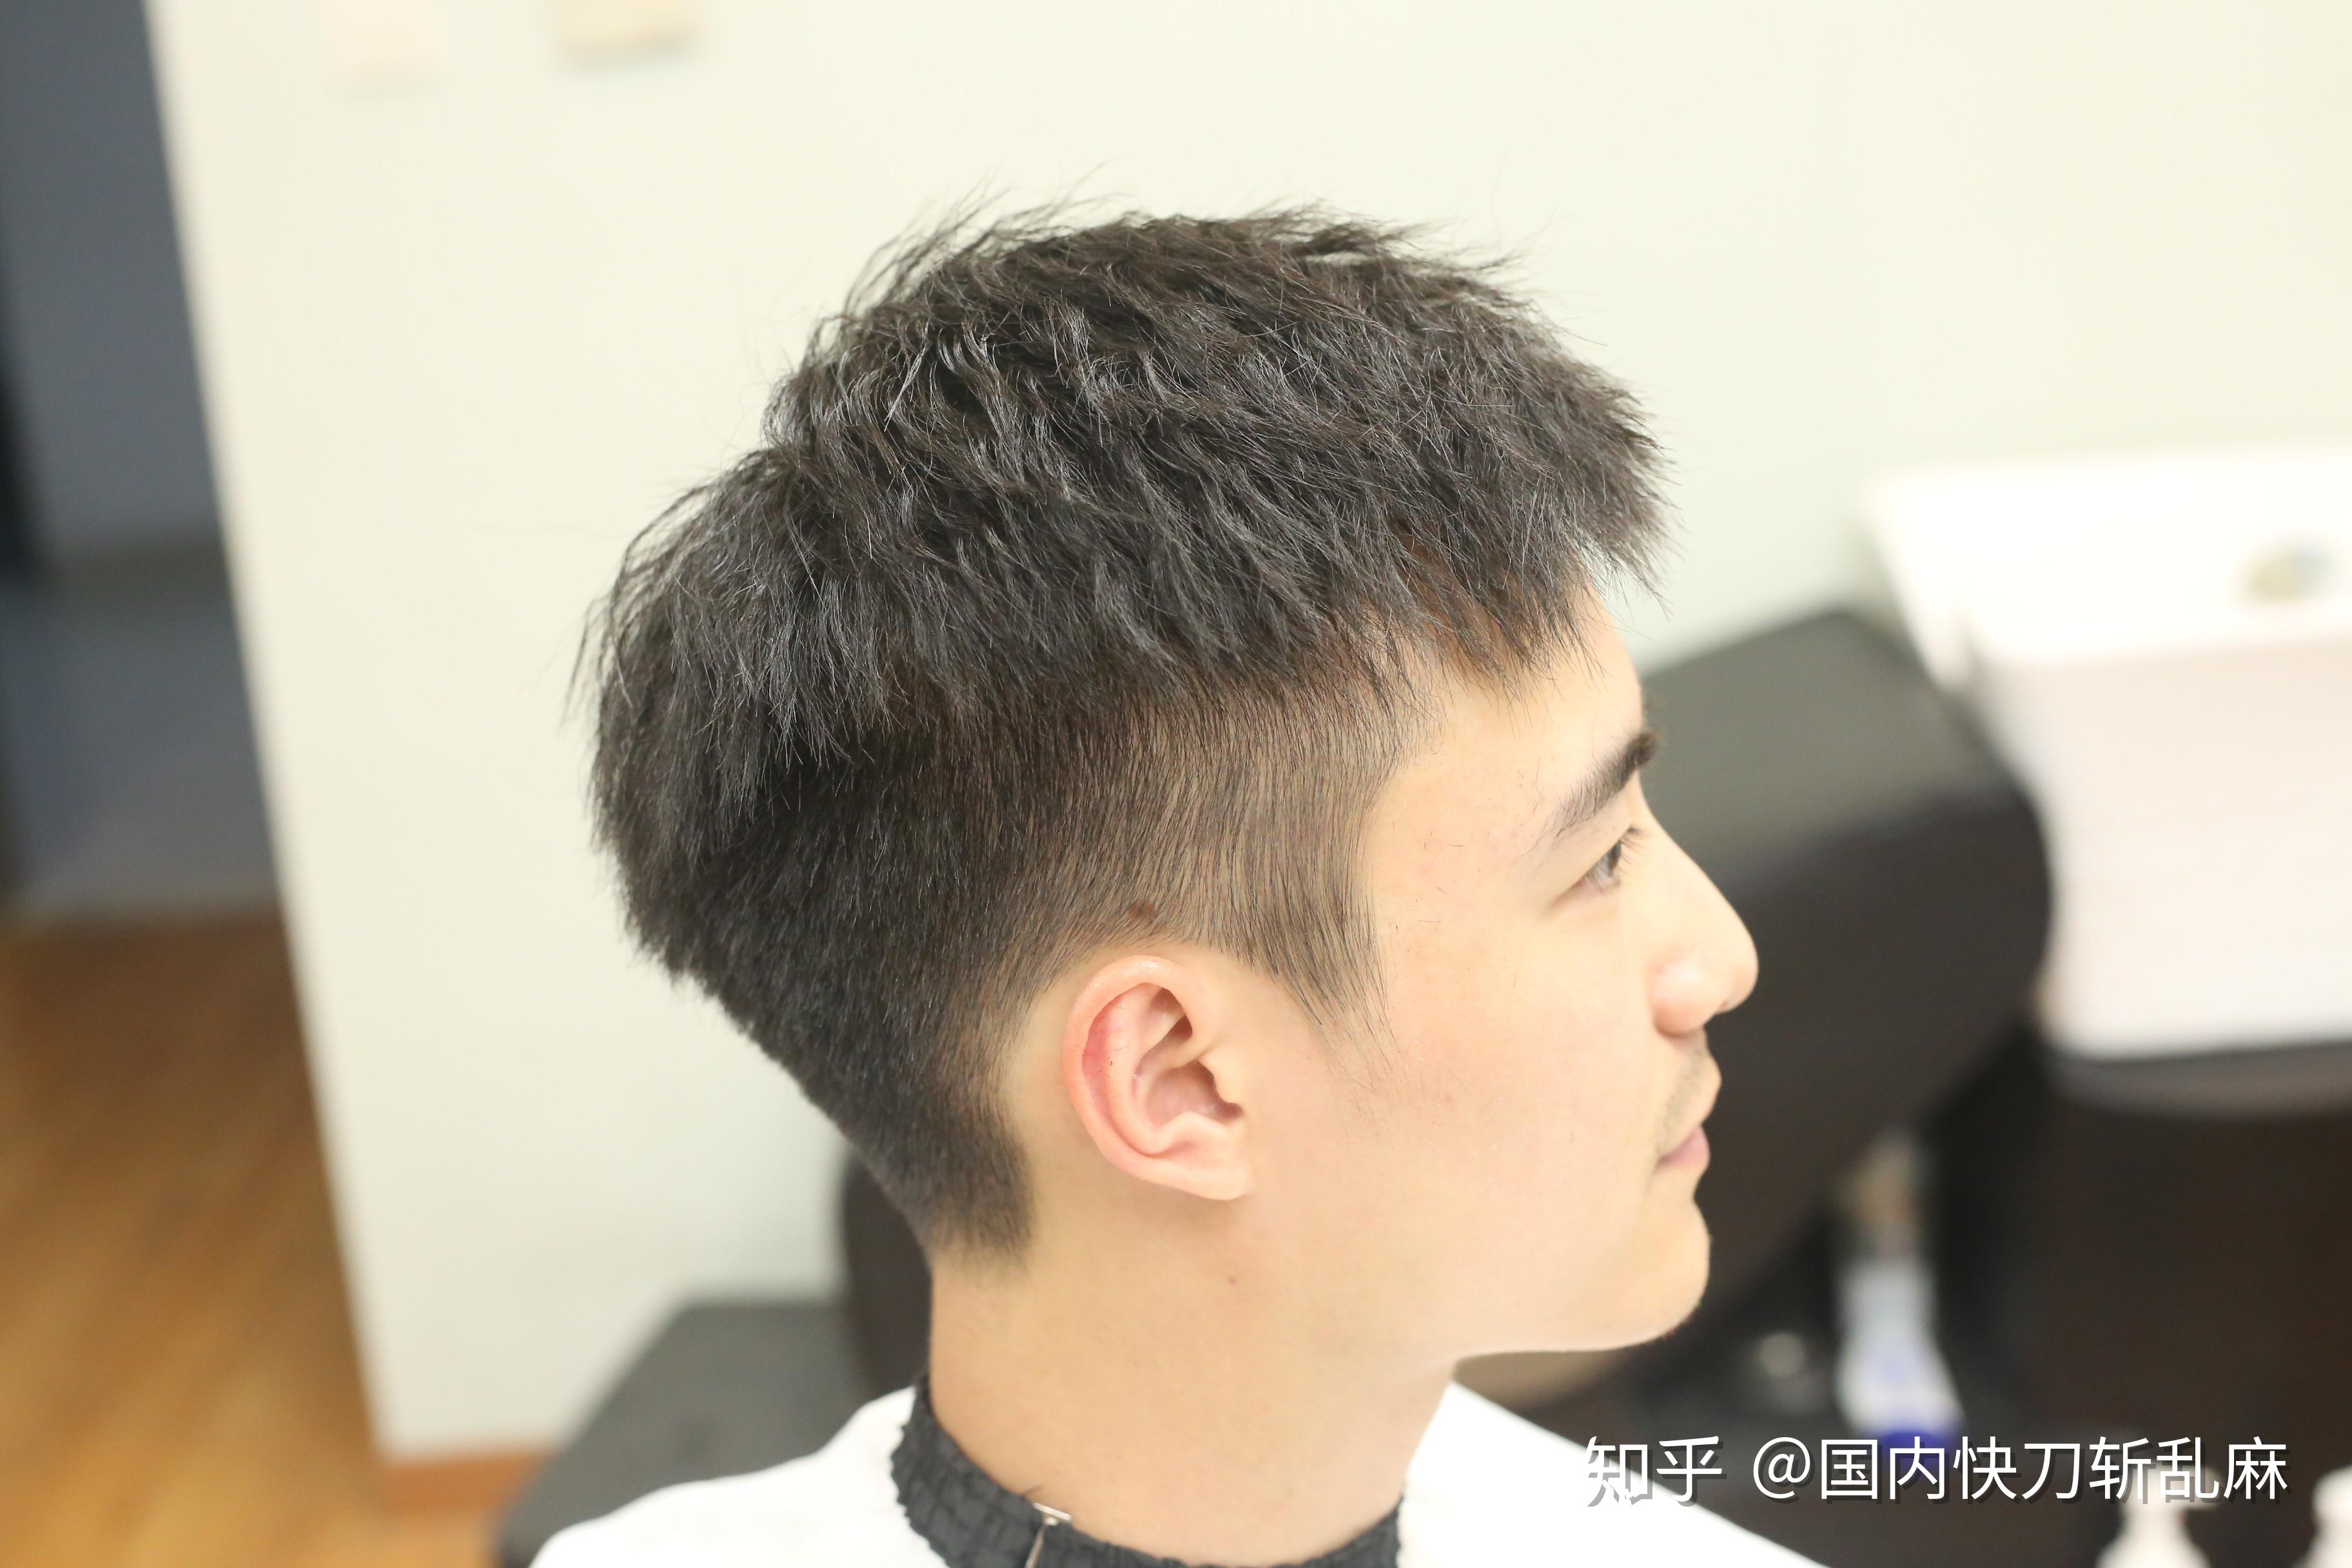 上海哪个理发店比较好纯剪发不会推销的那种